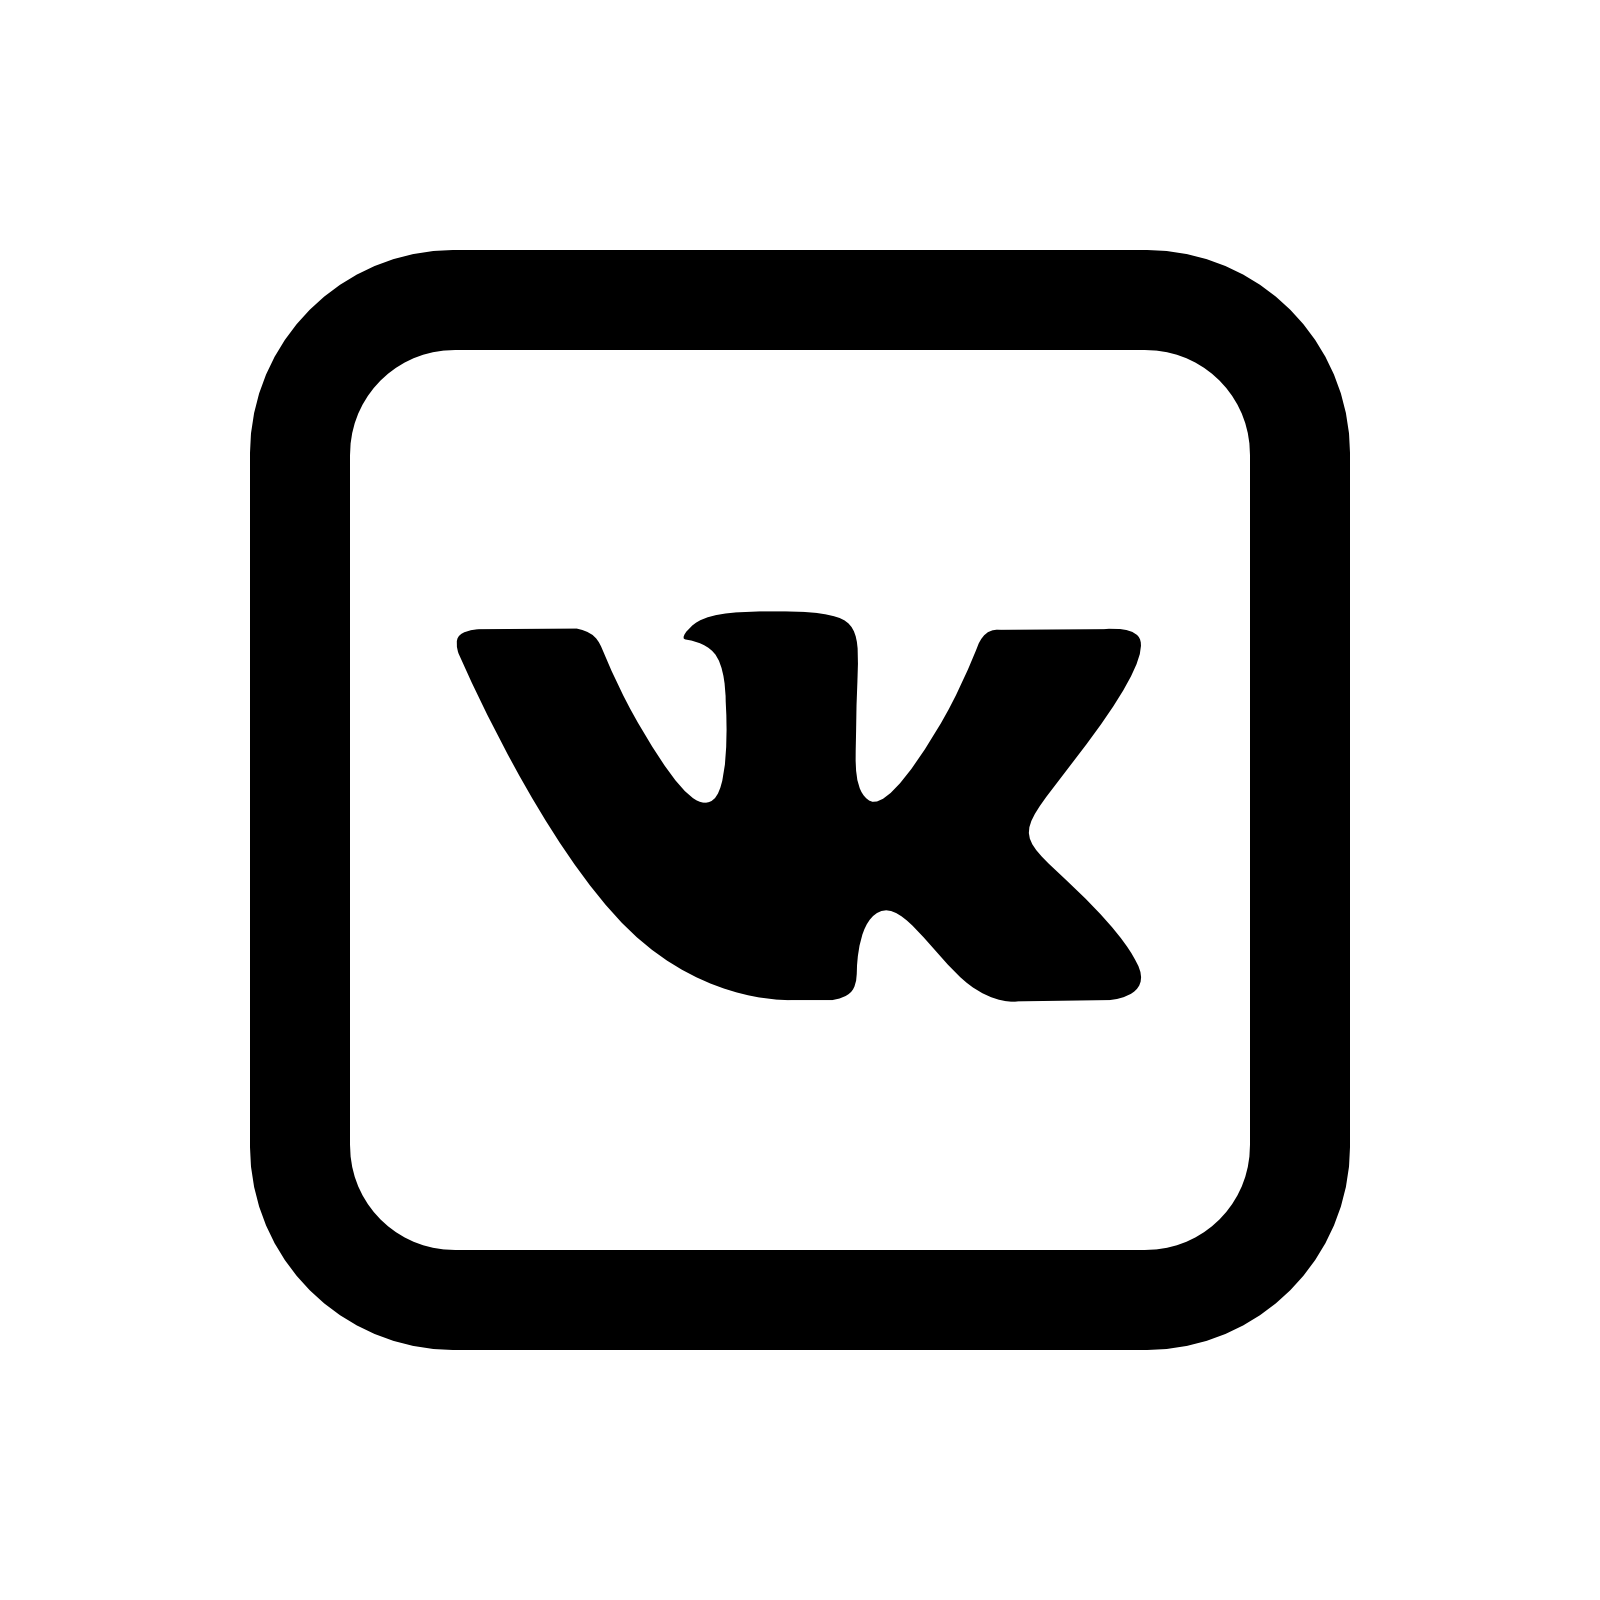 Логотип вк черный